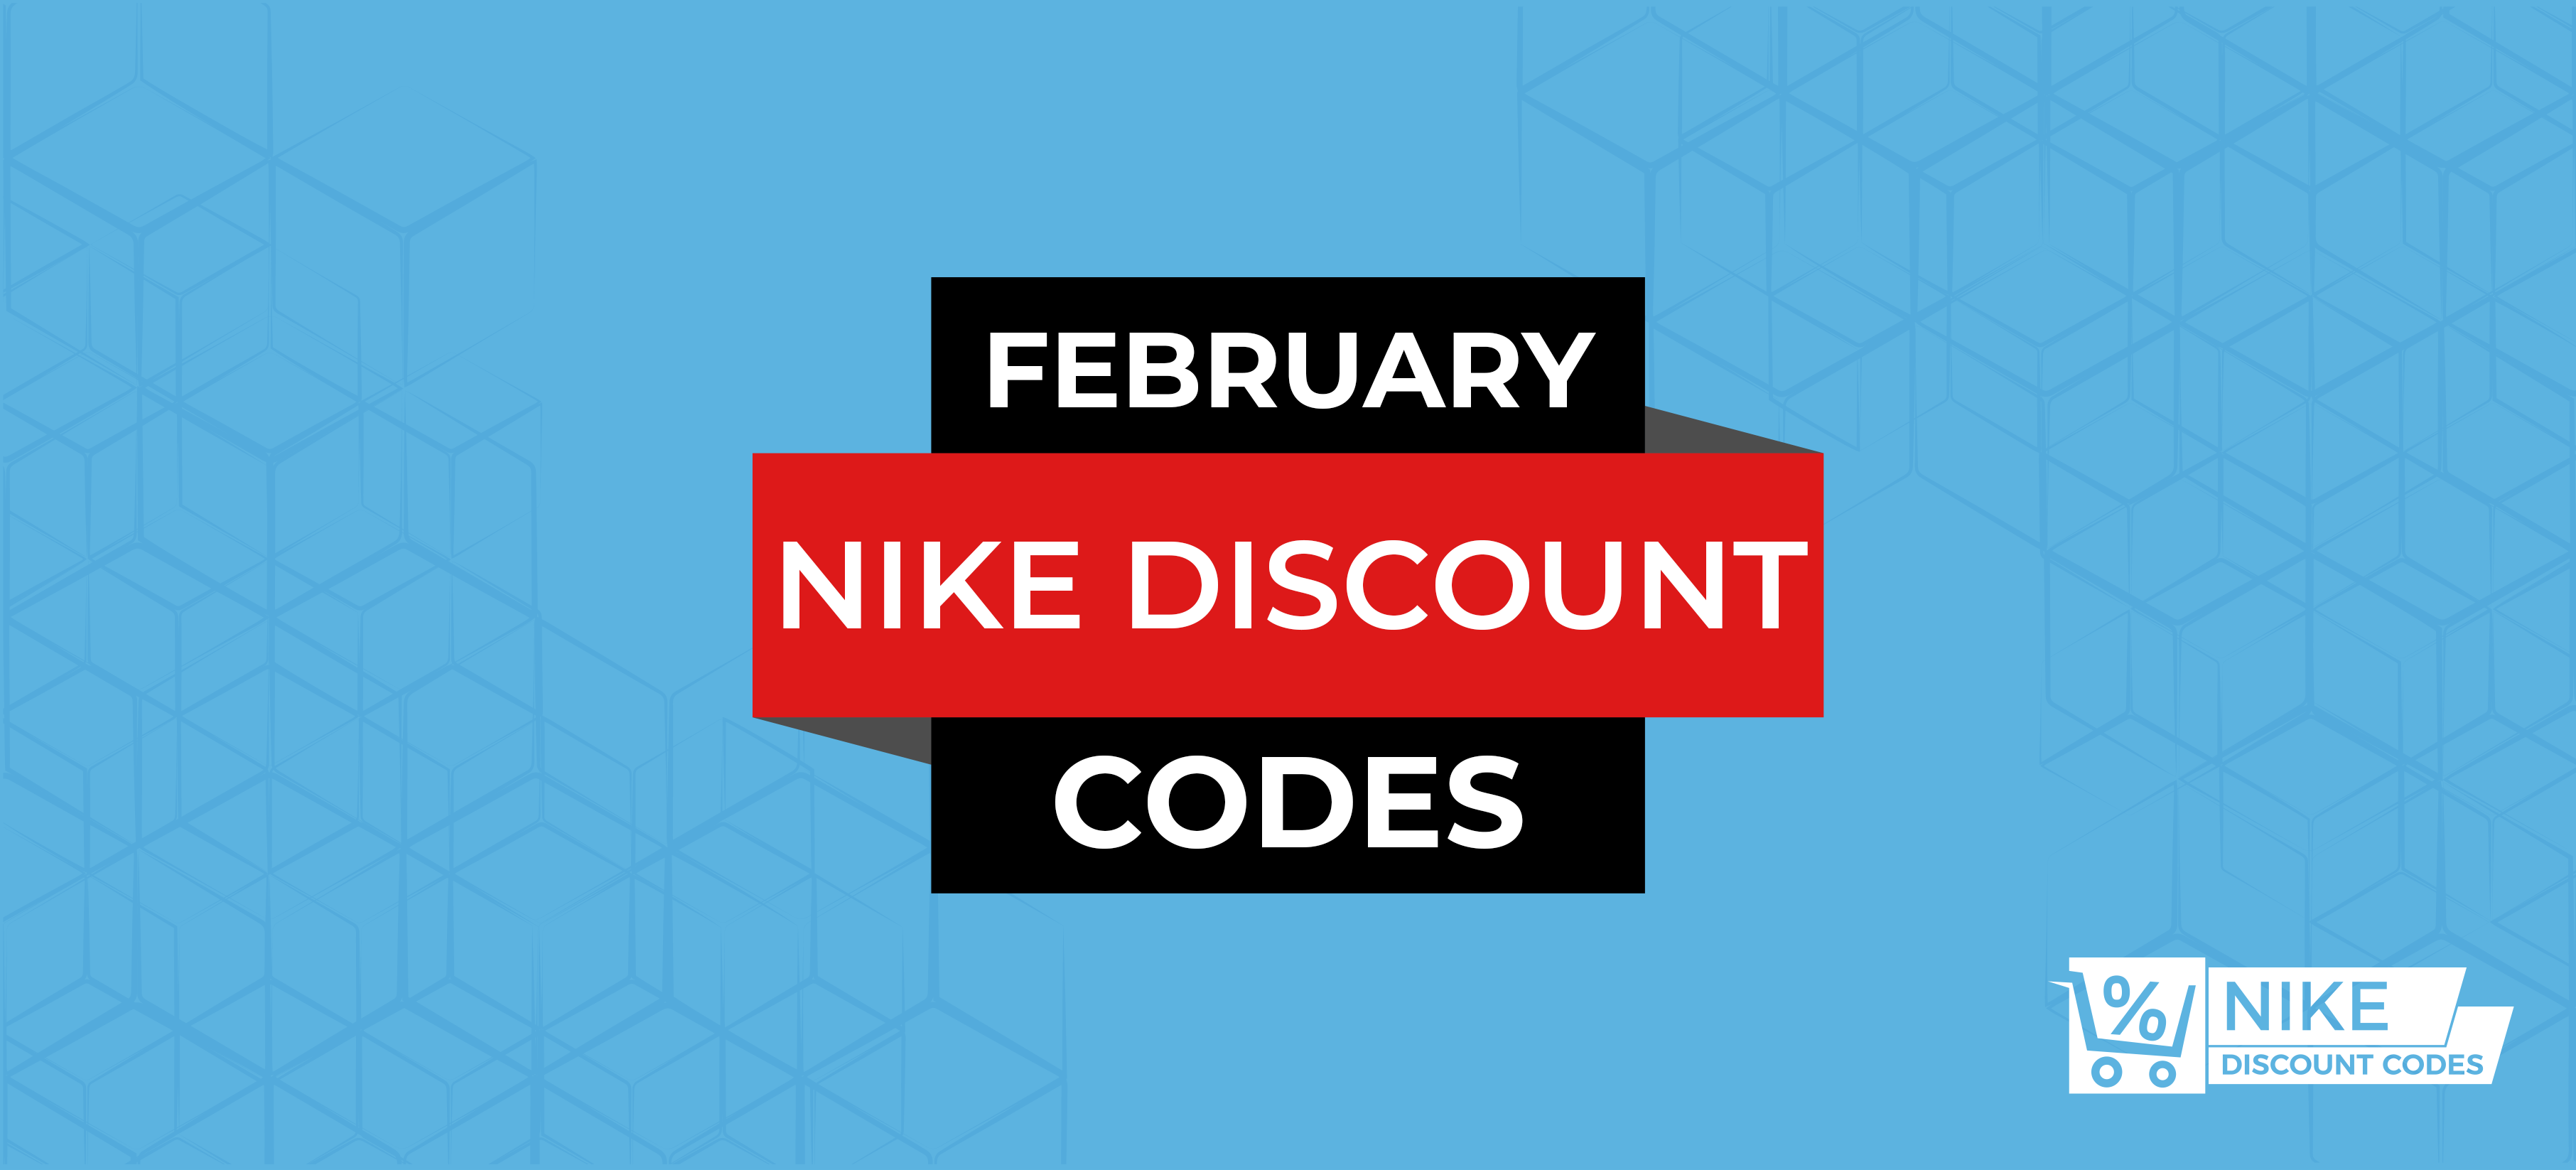 nike coupon code february 2020